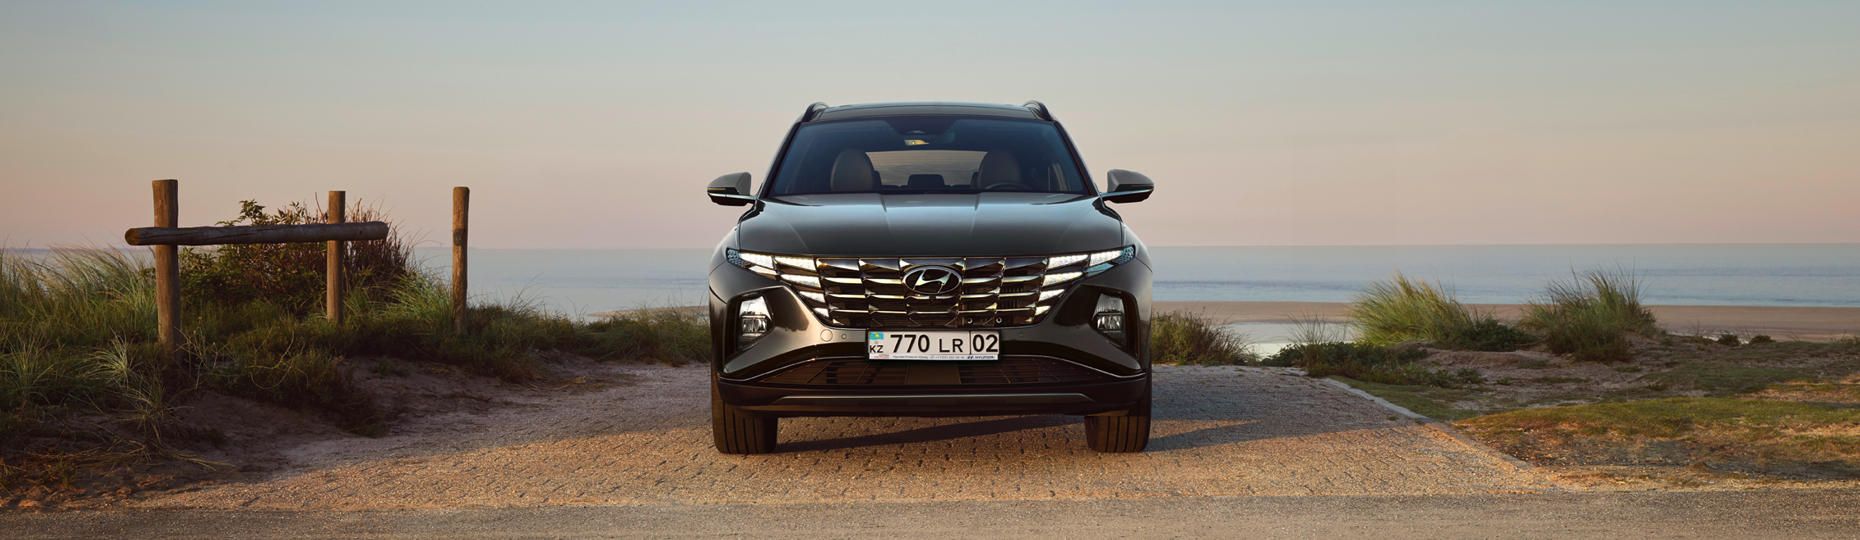 Цены и комплектация нового Hyundai Tucson в Алматы